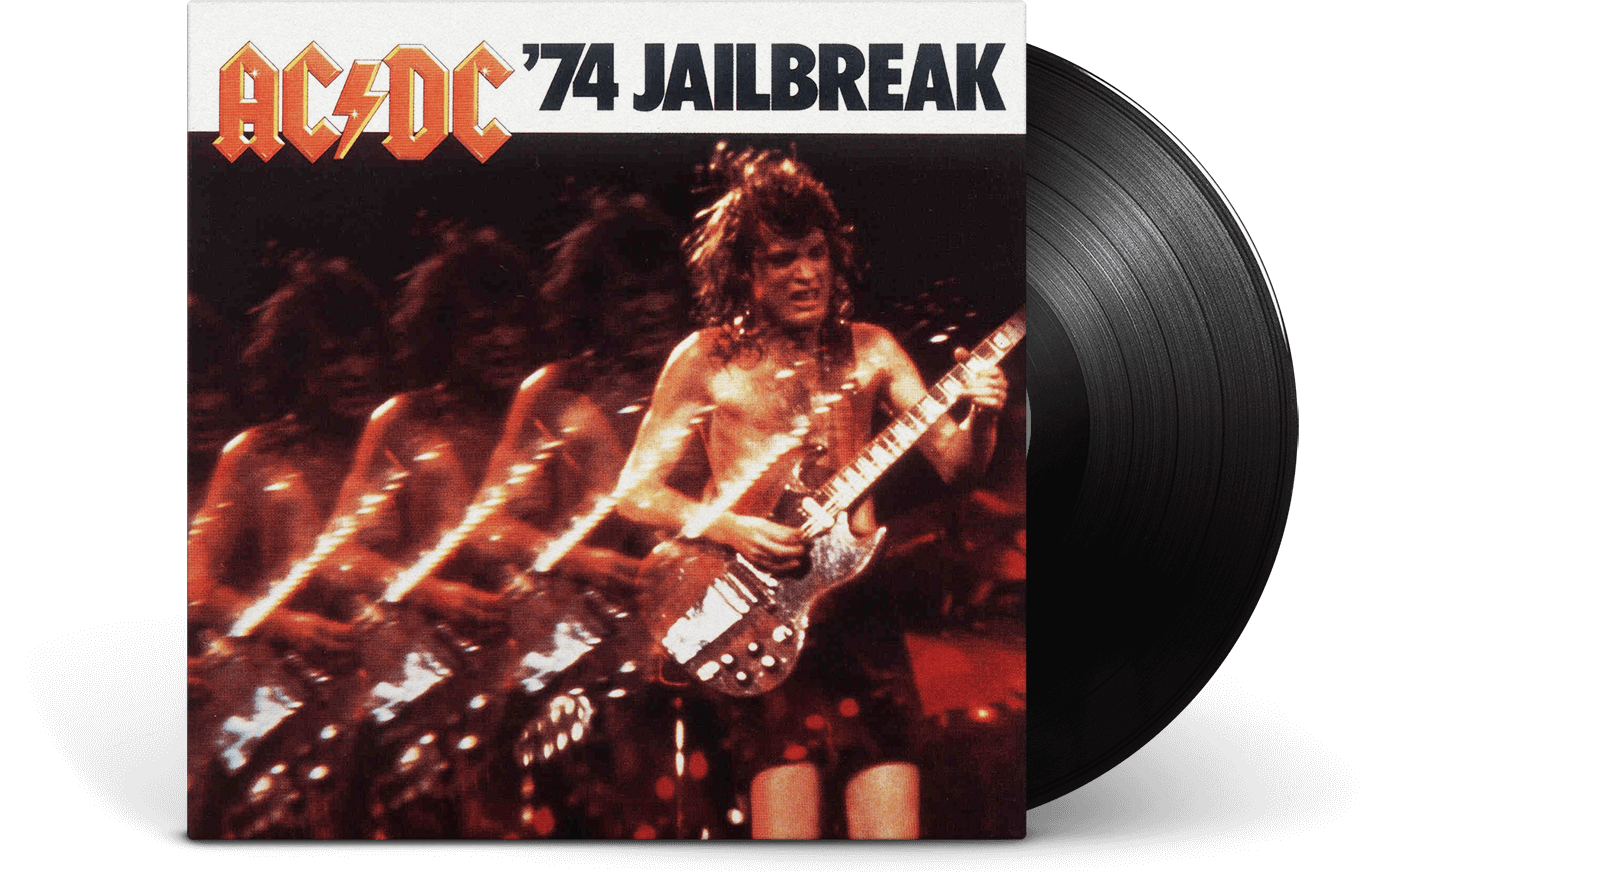 ac/dc. 74 jailbreak. cd. impecable(#) - Comprar CD de música Heavy Metal no  todocoleccion